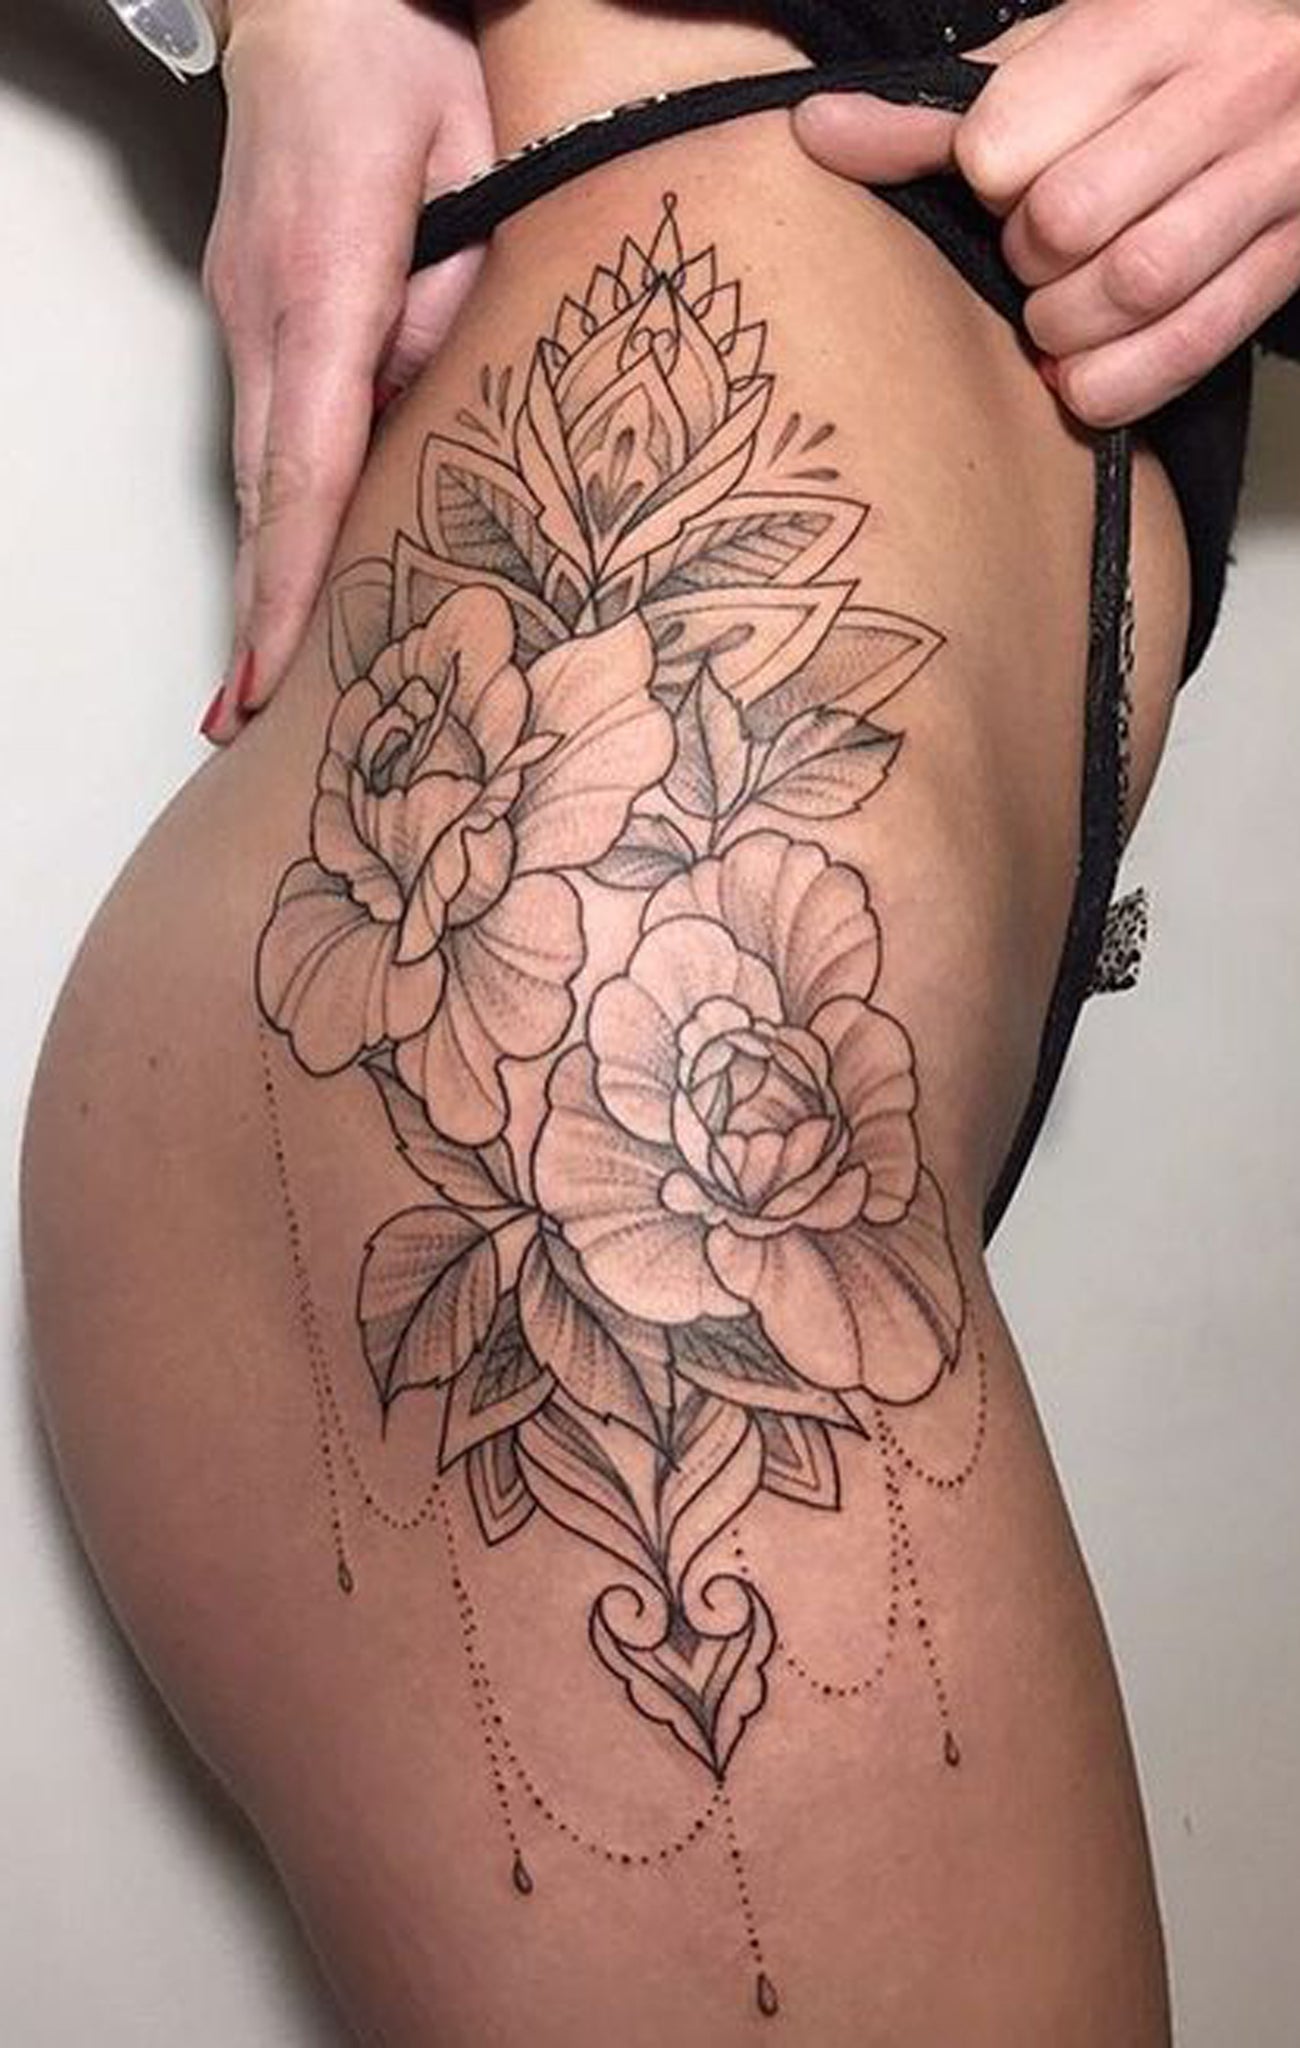 Delicate Floral Flower Hip Tattoo Ideas for Women - Women's Lotus Chandelier Thigh Tat -  tatuaje de la delicada flor de la mujer - www.MyBodiArt.com